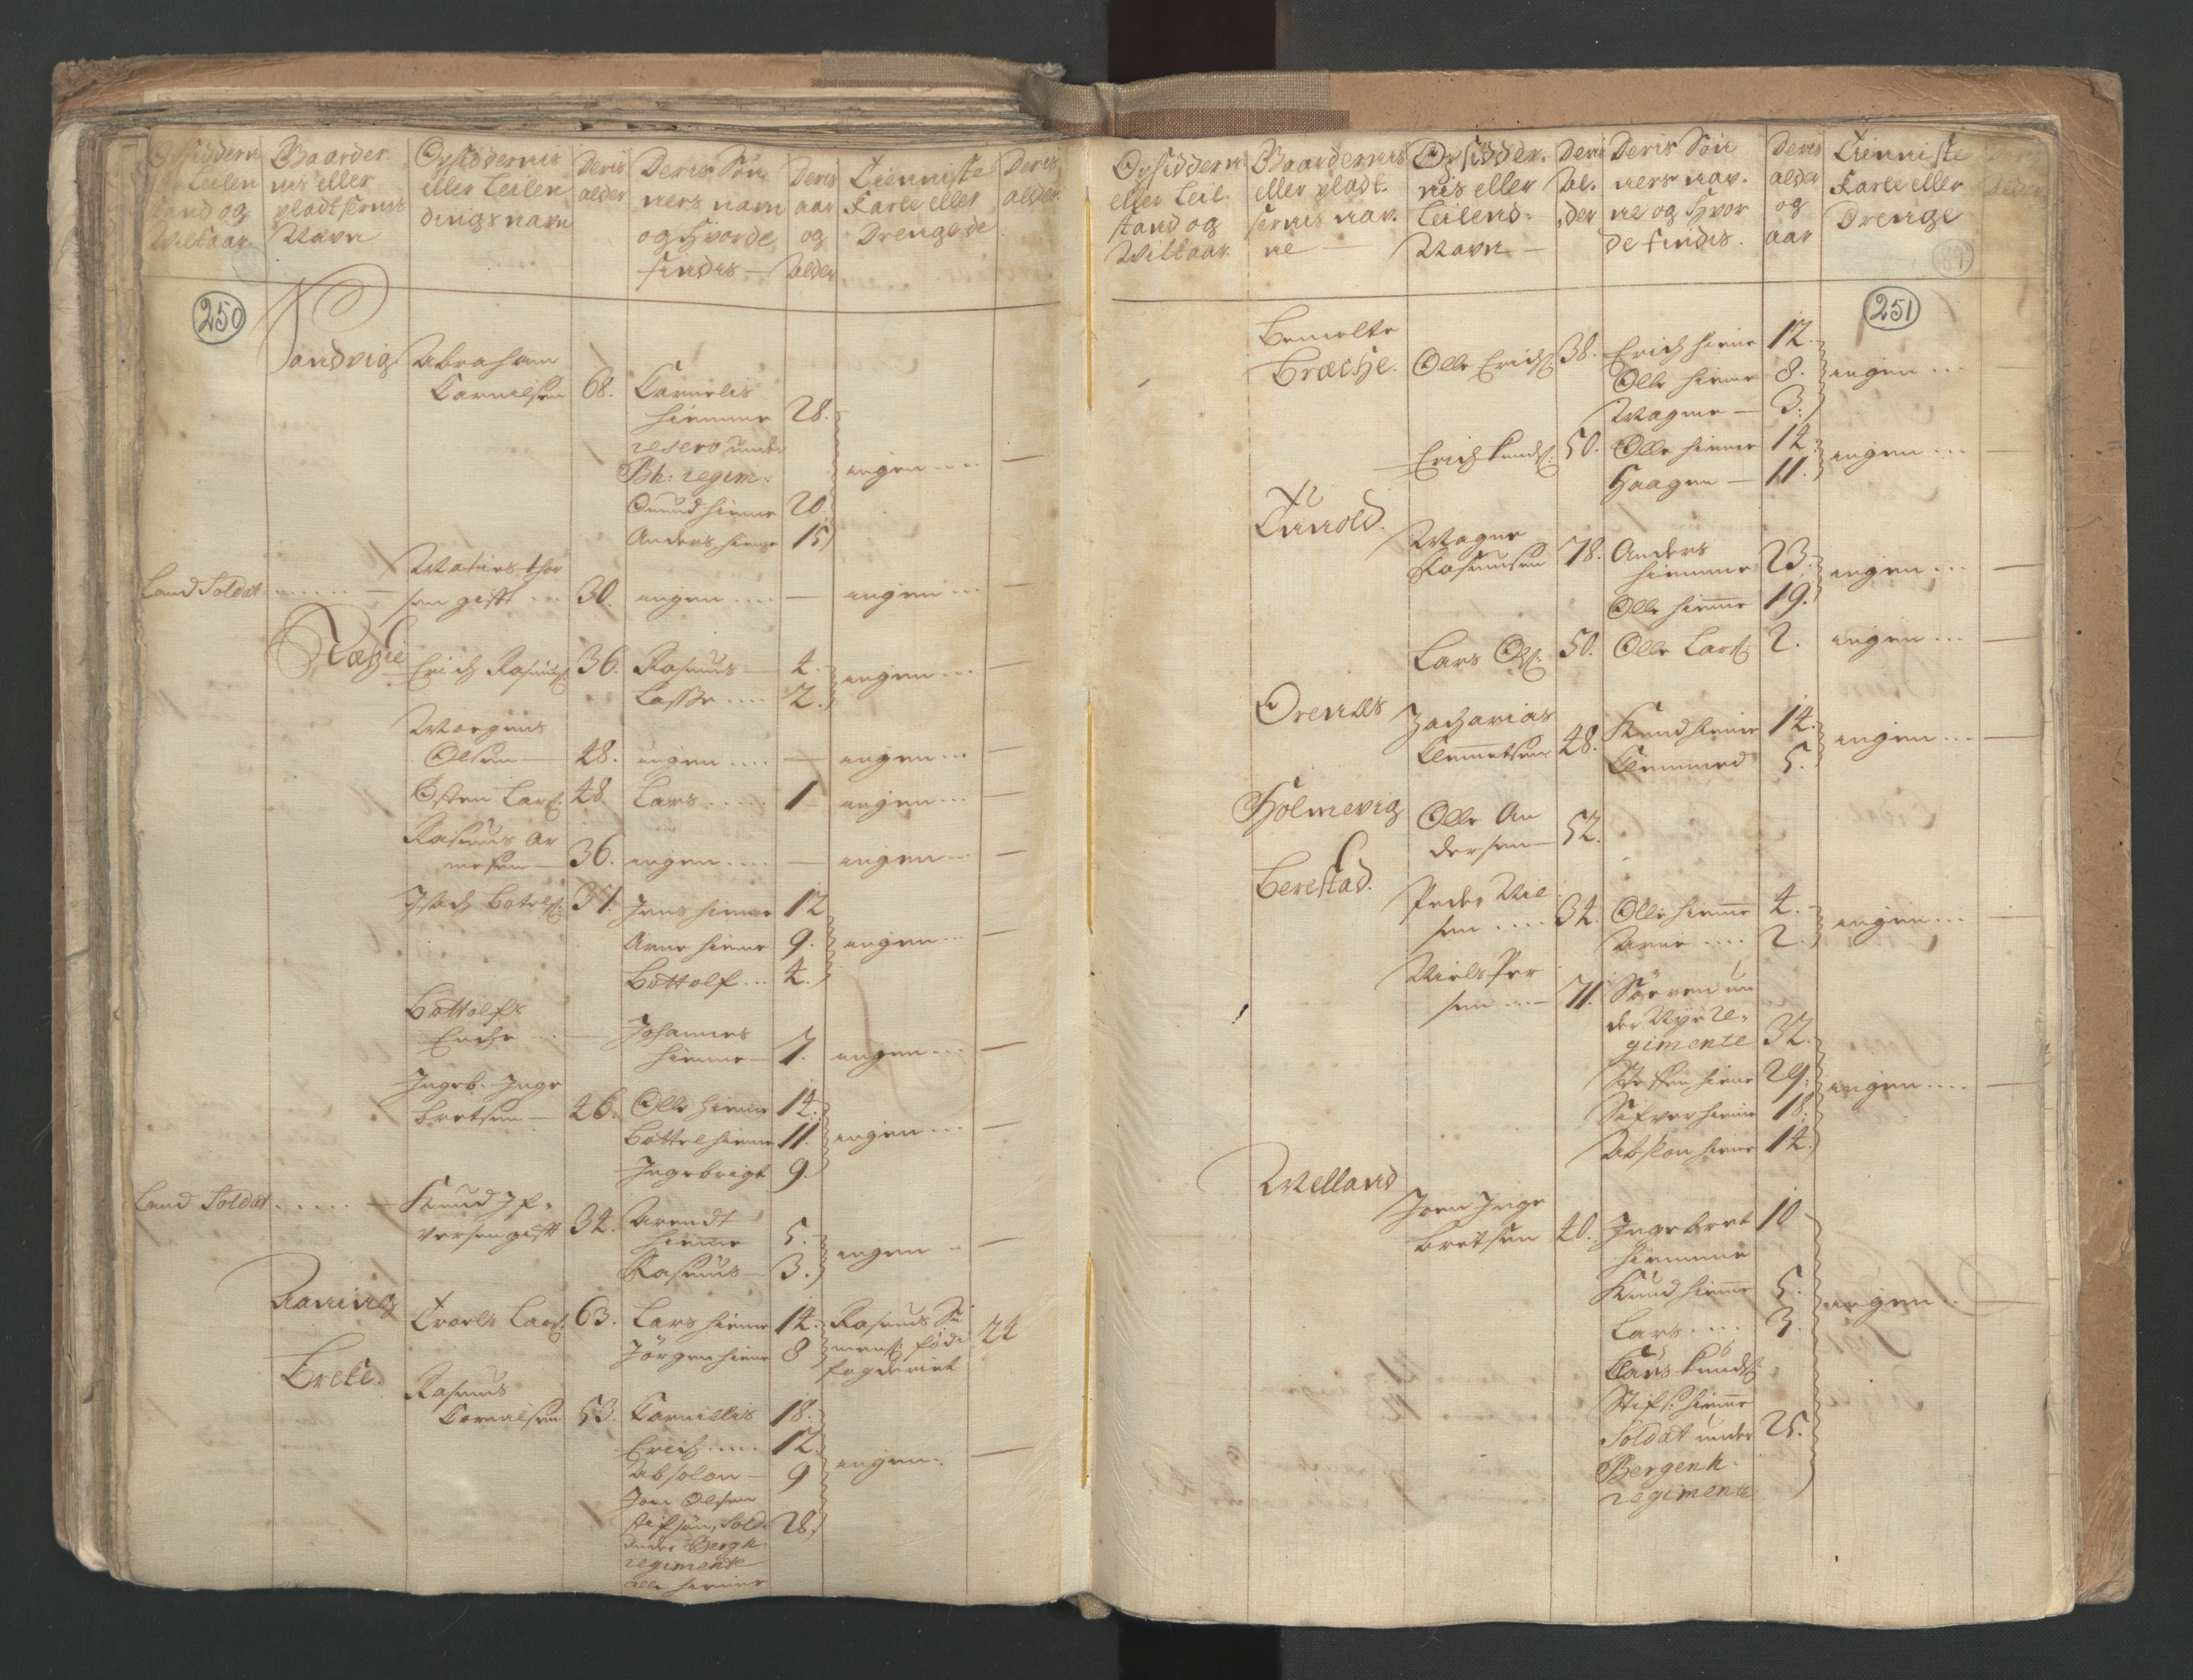 RA, Manntallet 1701, nr. 9: Sunnfjord fogderi, Nordfjord fogderi og Svanø birk, 1701, s. 250-251